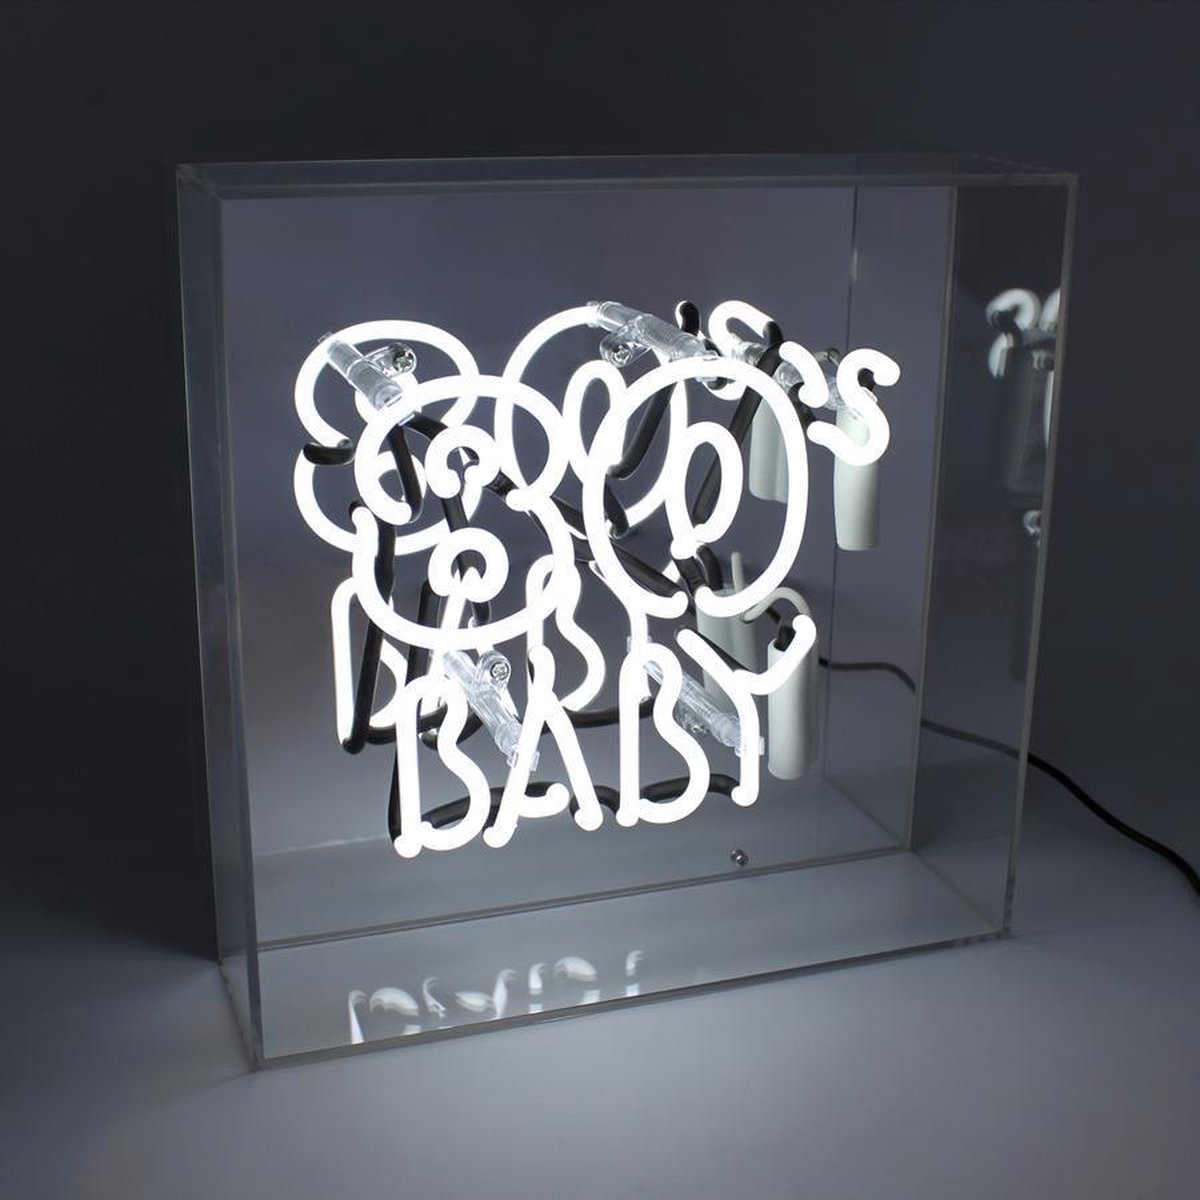 Locomocean - Tafellamp - Neonlamp Sign Box 80's Baby - led